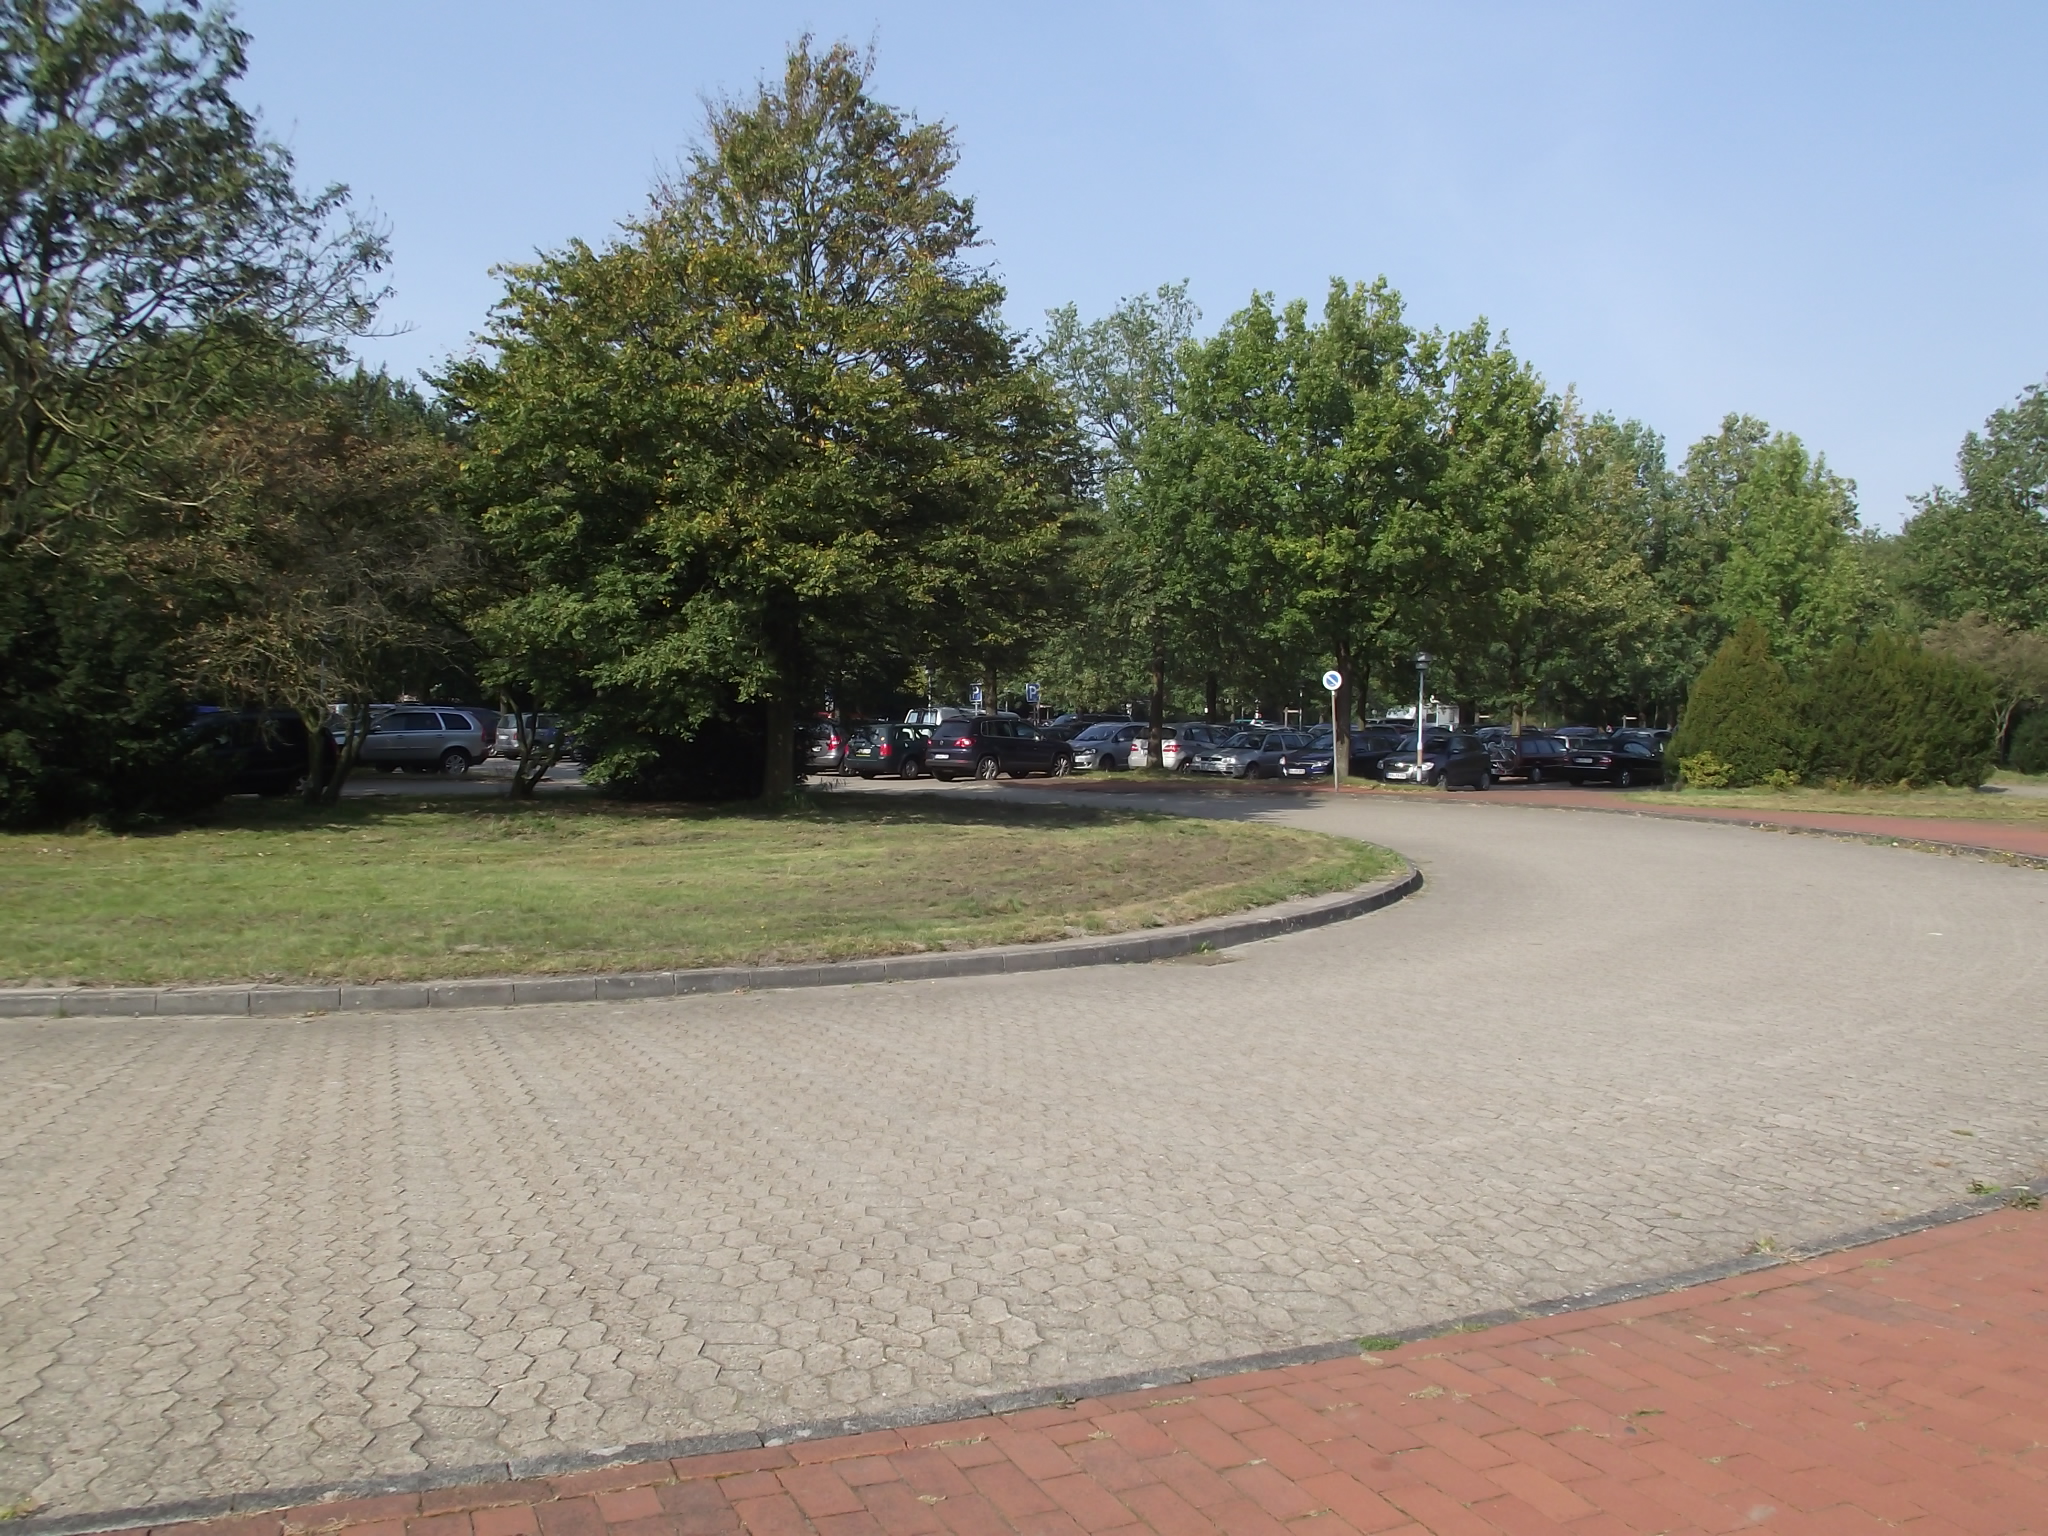 Museumsdorf Cloppenburg - Parkplatz mit vielen Bäumen